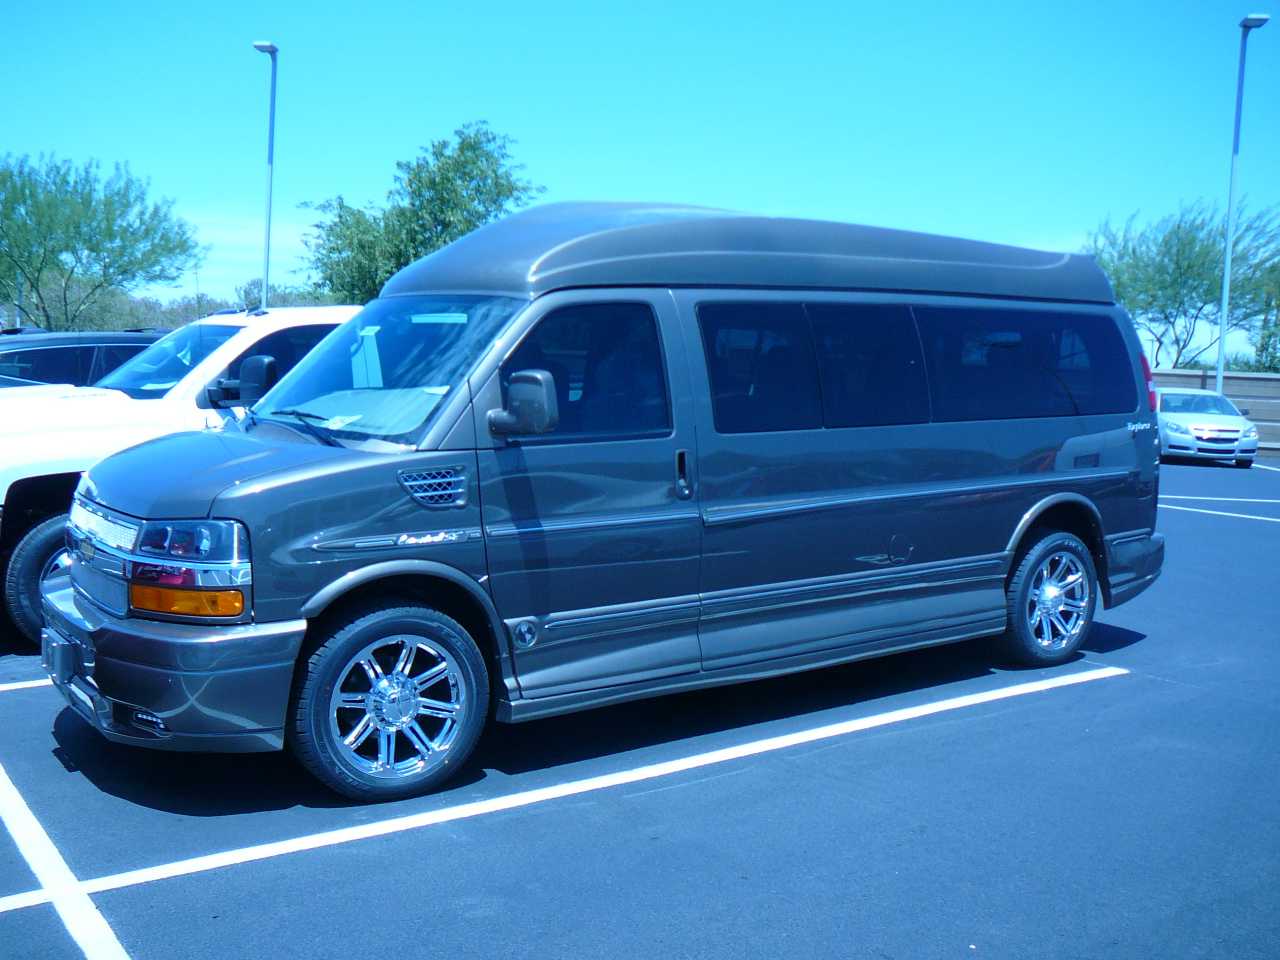 2014 Explorer Van CHEVROLET EXPRESS Brownstone Metallic Explorer Van Limited SE